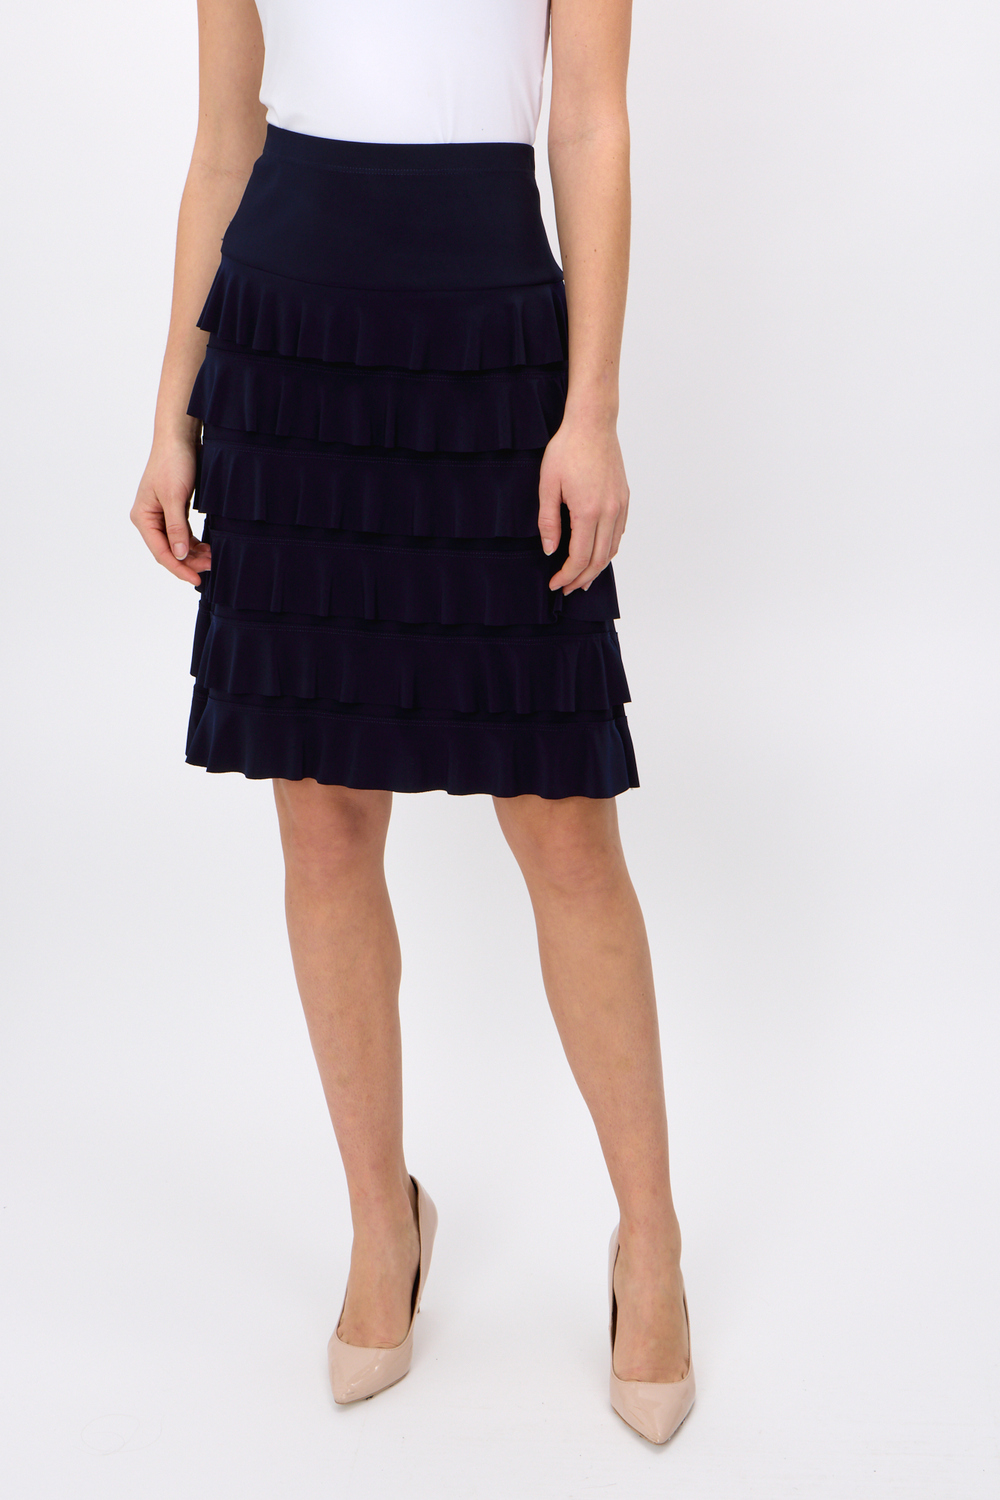 Tiered Ruffle Skirt Style 242044. Midnight Blue